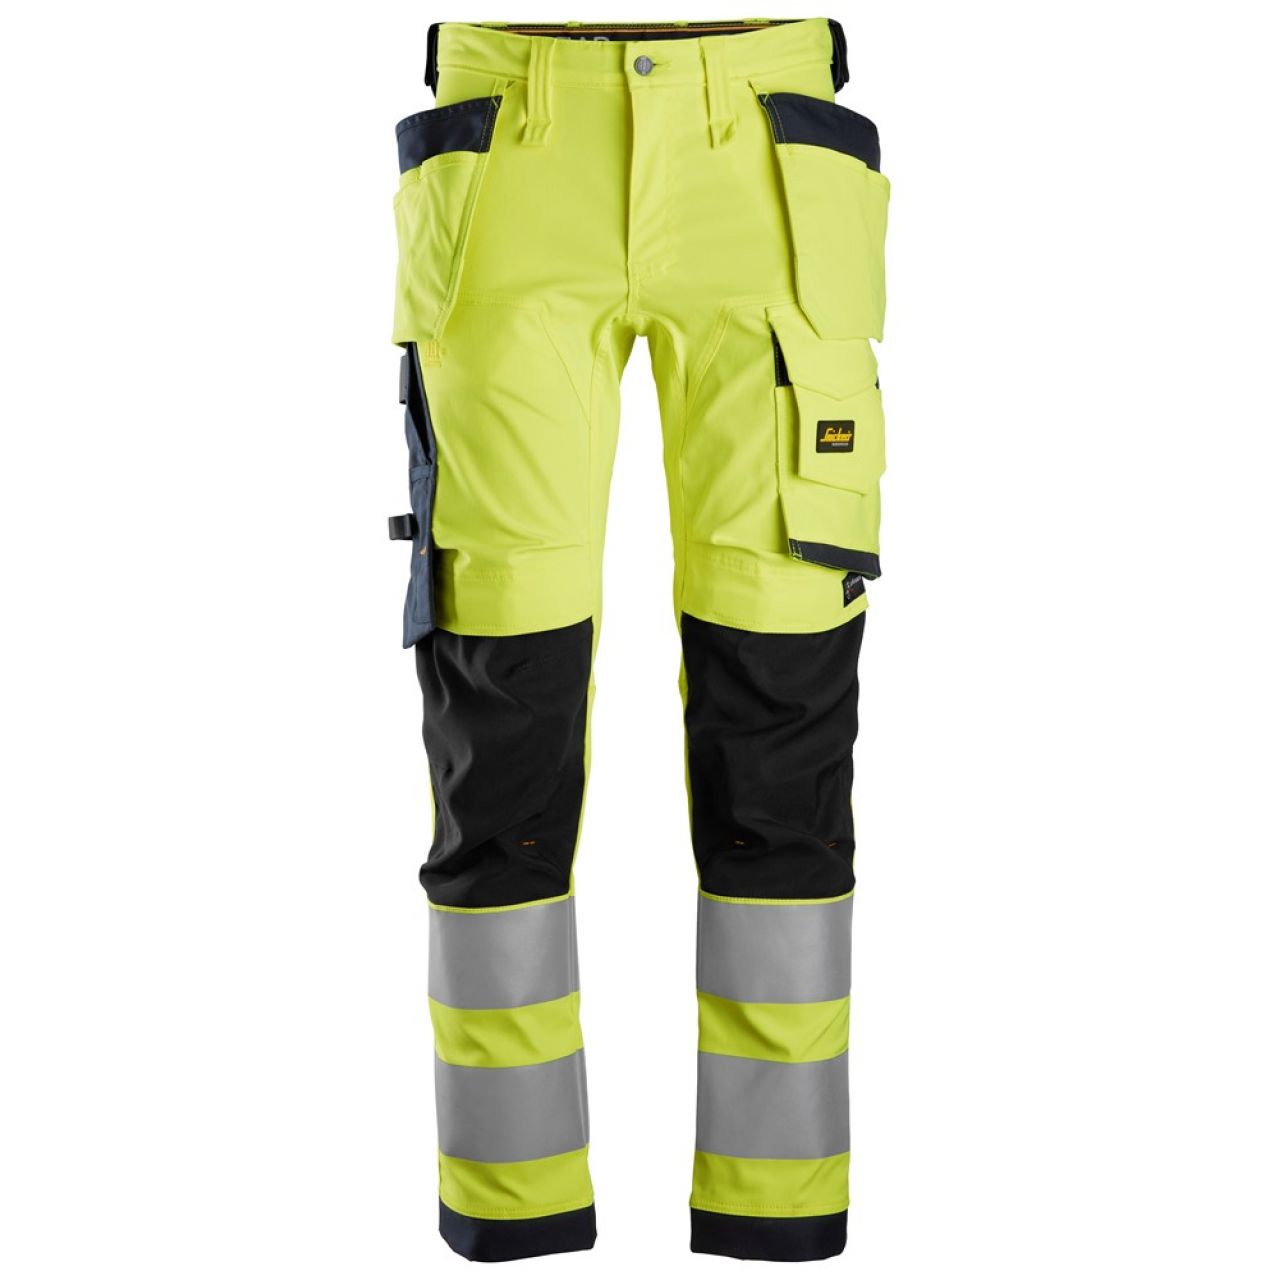 6243 Pantalones largos de trabajo elásticos de alta visibilidad clase 2 con bolsillos flotantes amarillo-azul marino talla 44